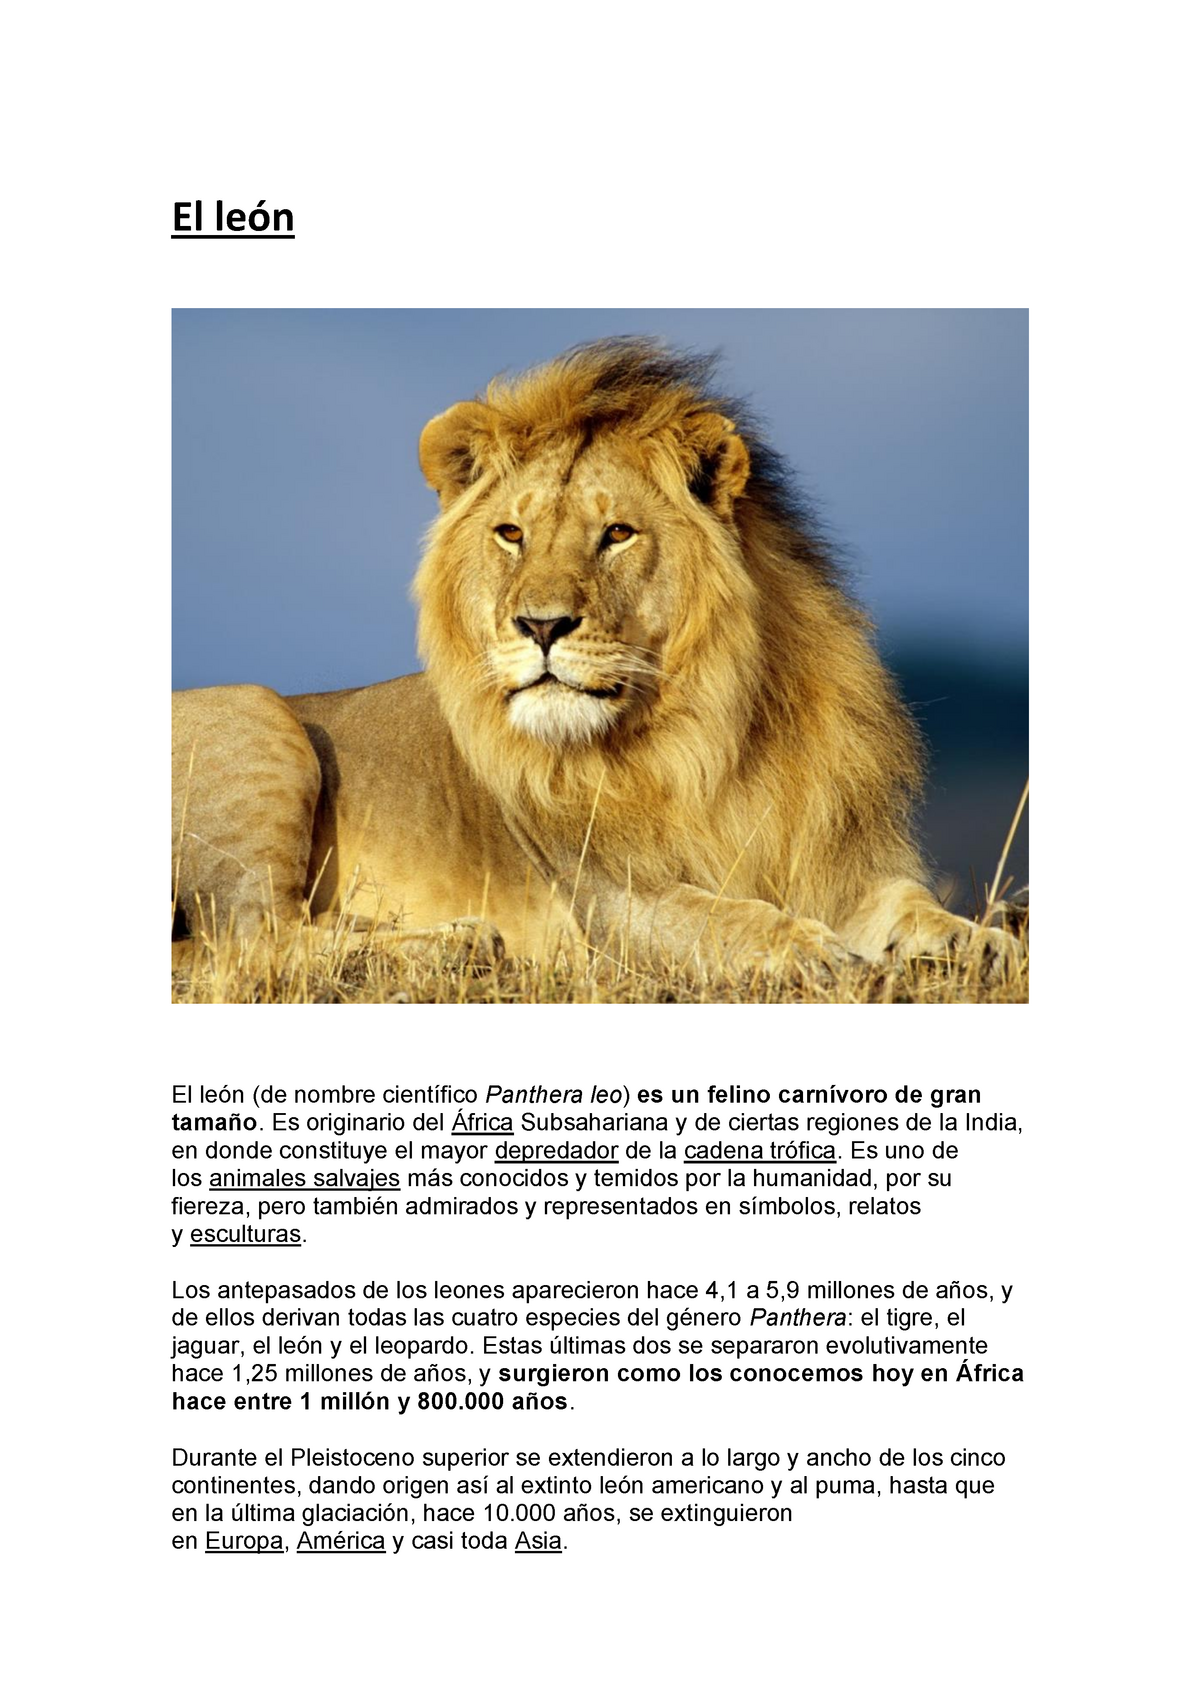 El león - Resumen sobre el animal león - El león El león (de nombre  científico Panthera leo ) es un - Studocu